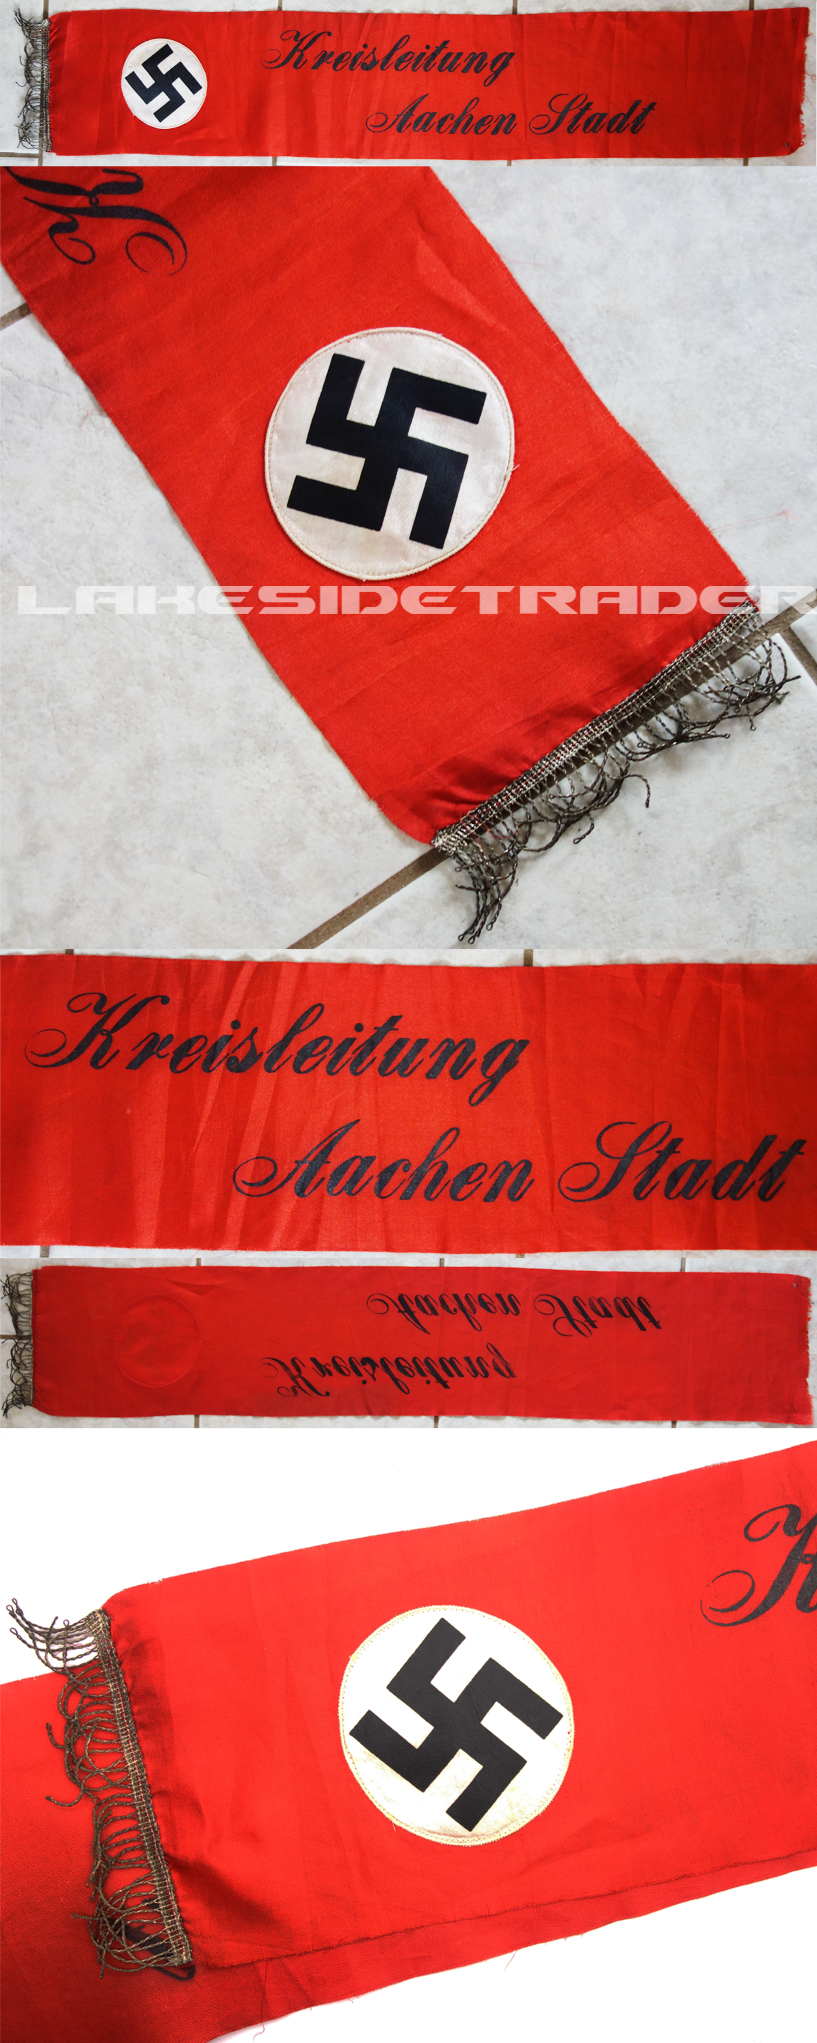 Kreisleitung Aachen Stadt Banner